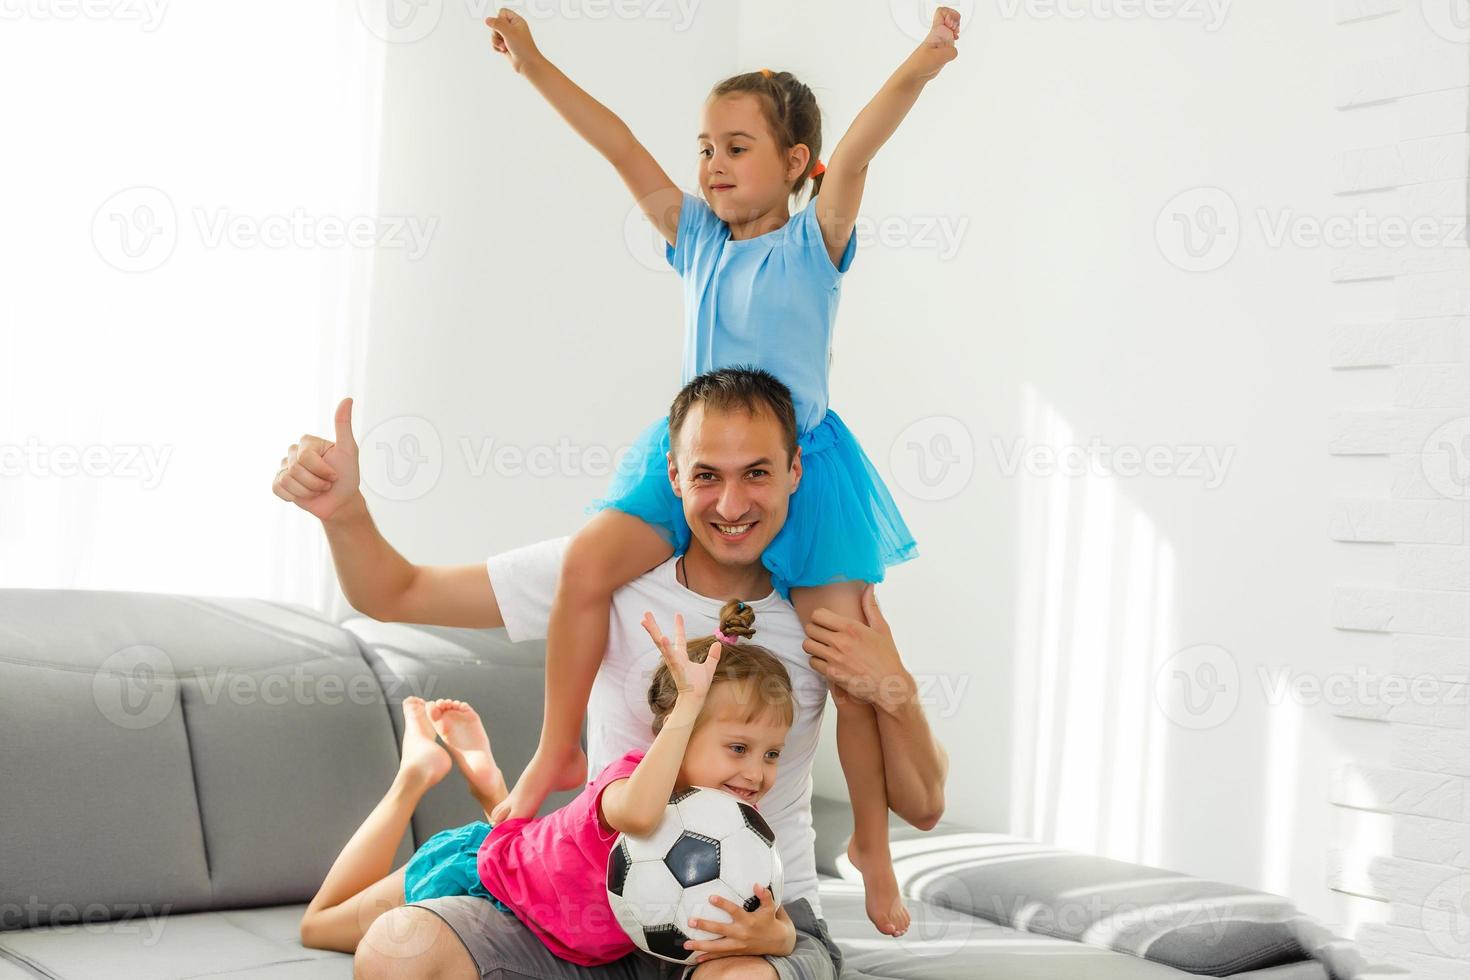 poco ragazze con calcio palla a casa foto